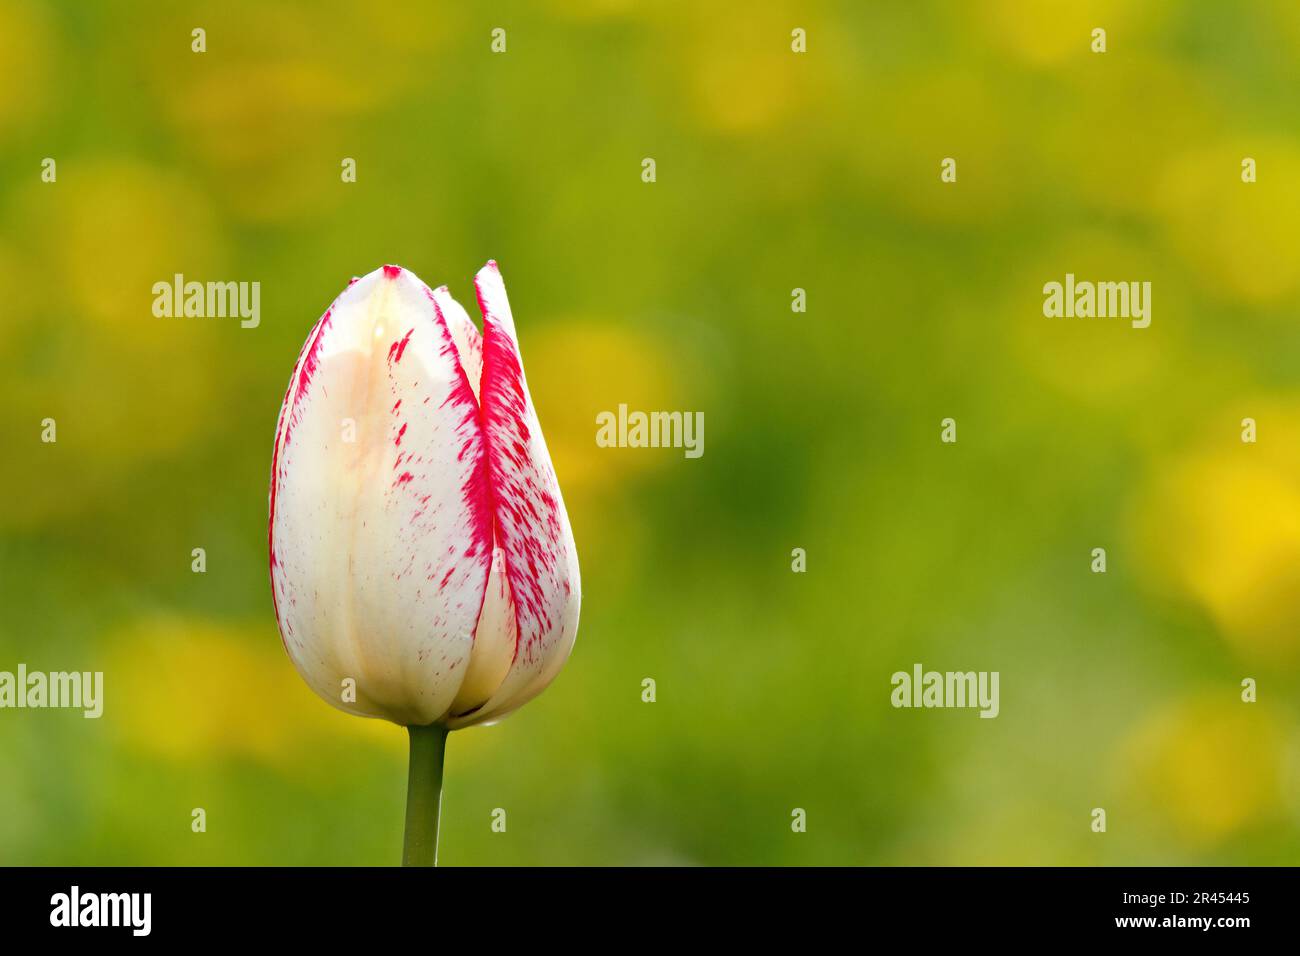 Une belle tulipe rose et blanche qui fleurit à côté d'autres pissenlits lumineux Banque D'Images